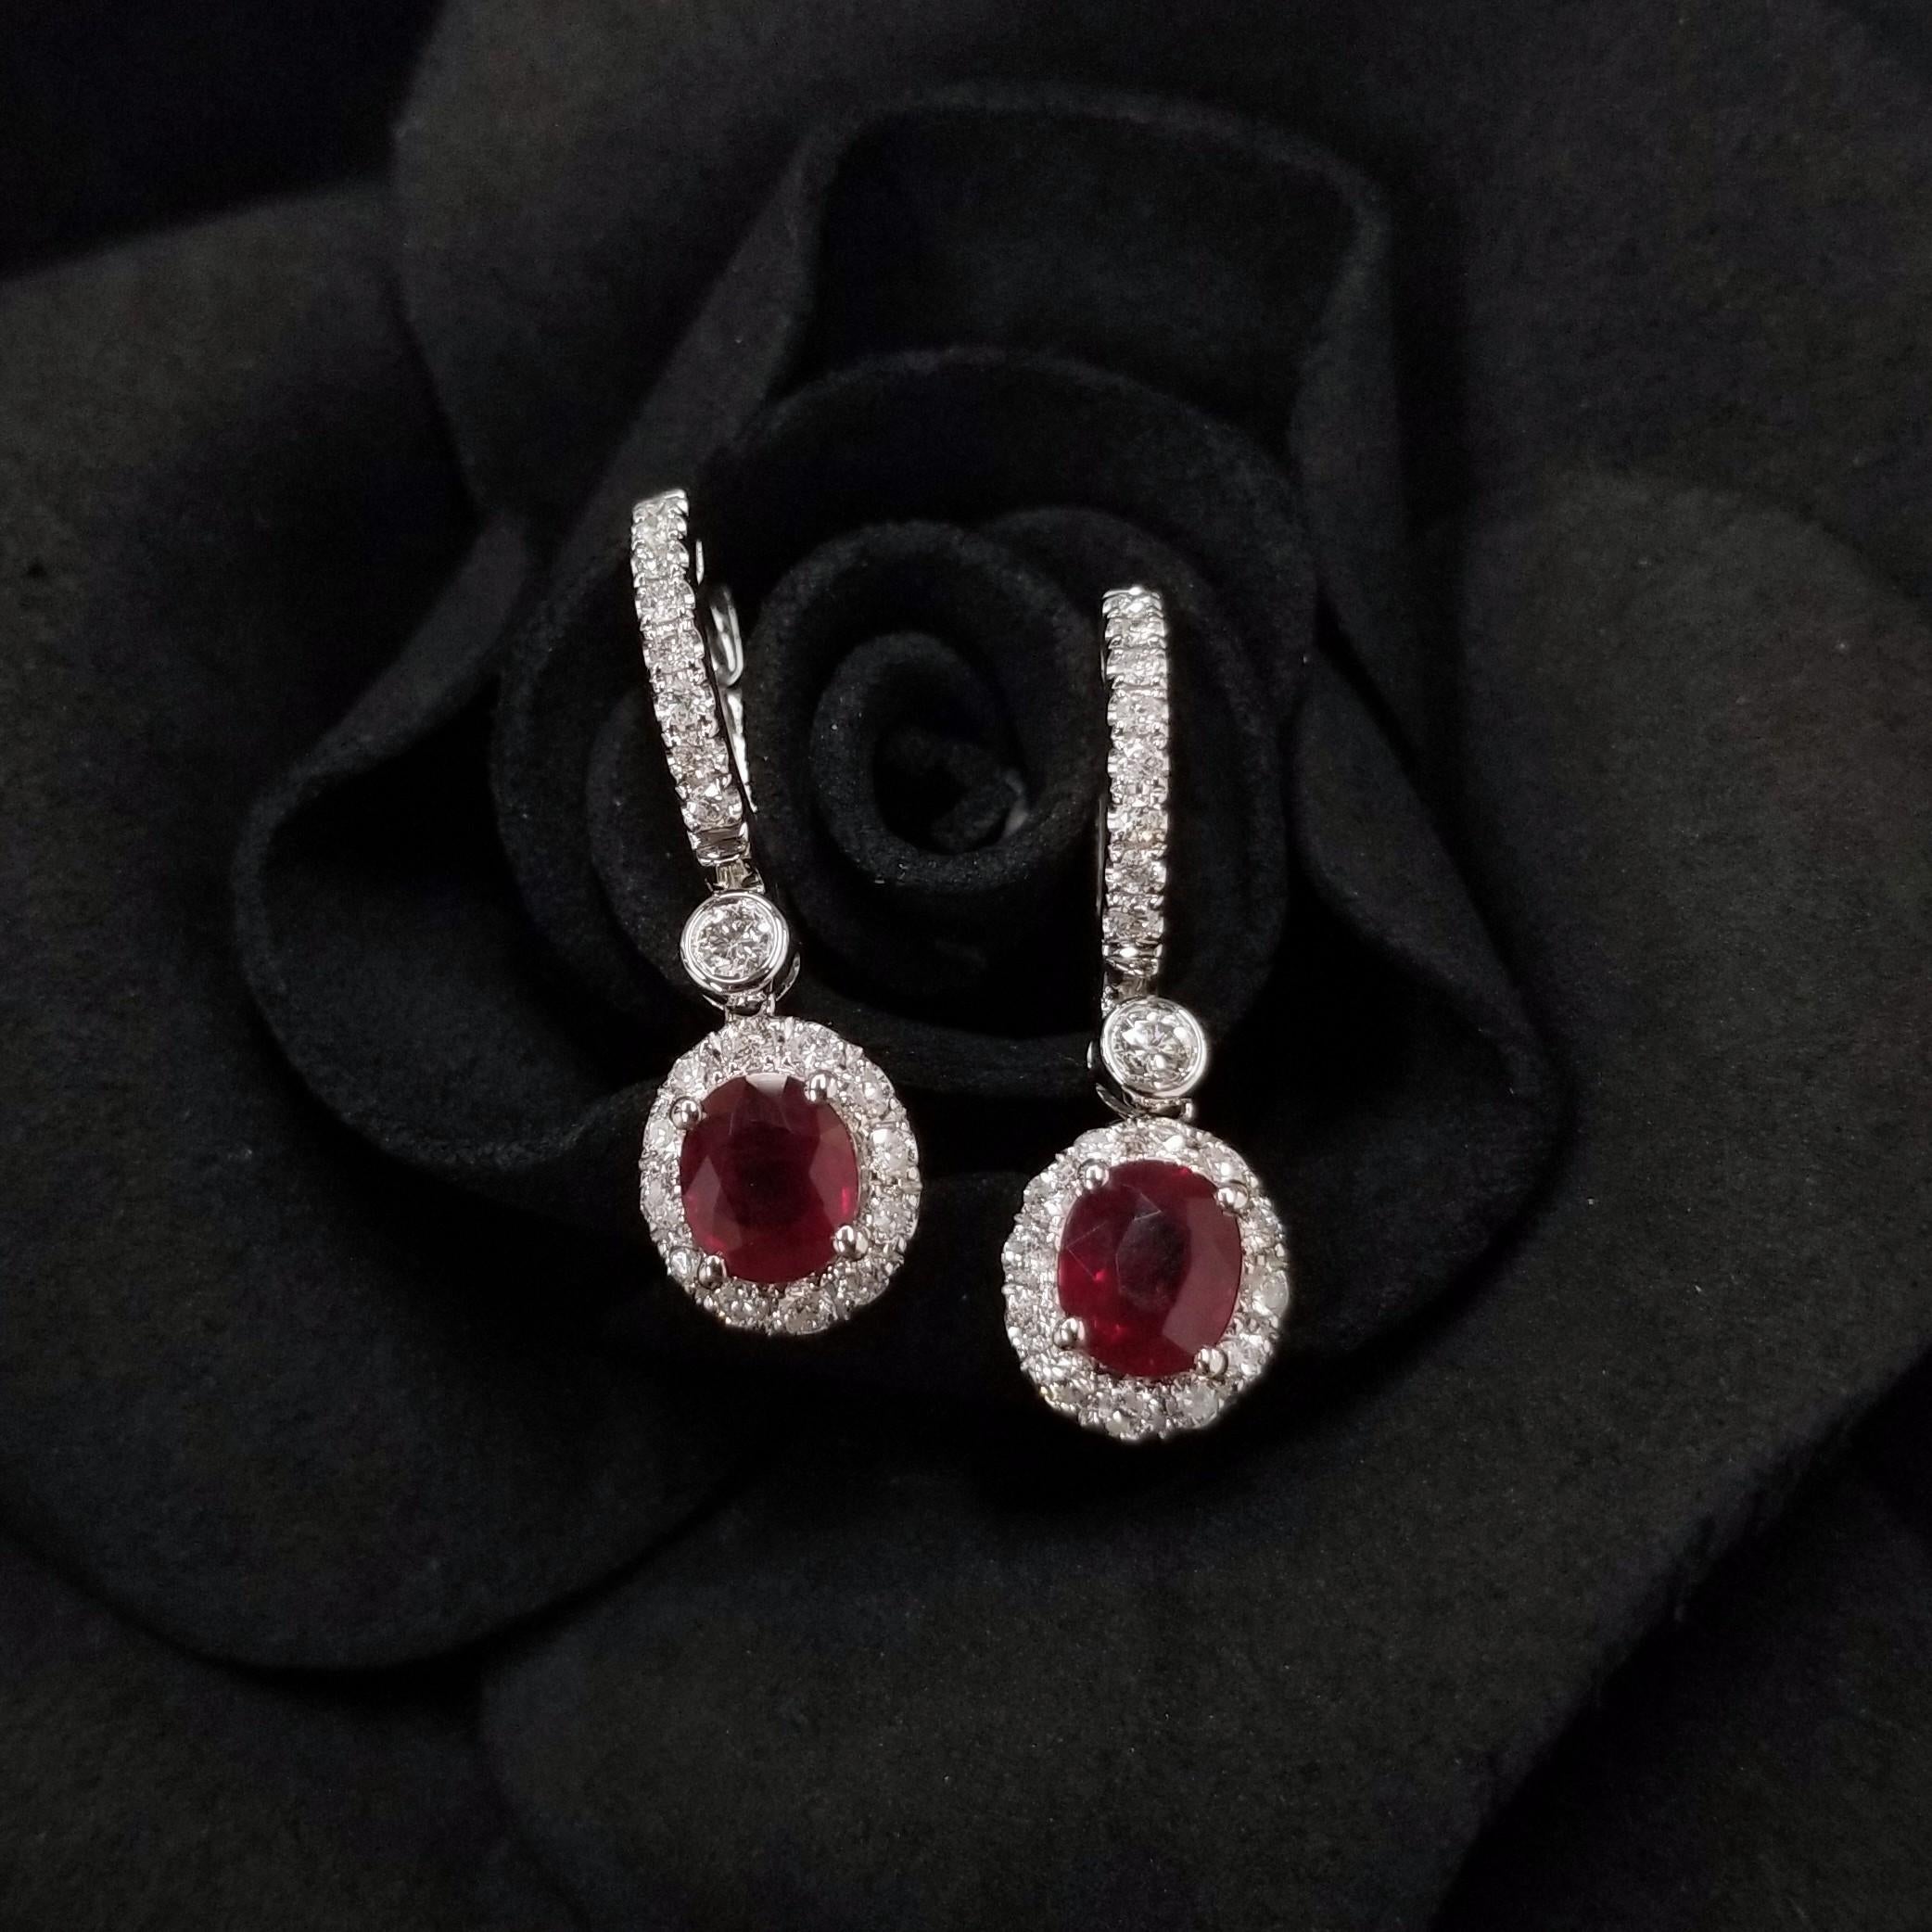 Modern IGI Certified 1.58 Carat Ruby & 0.44 Carat Diamond Earrings in 18K White Gold For Sale